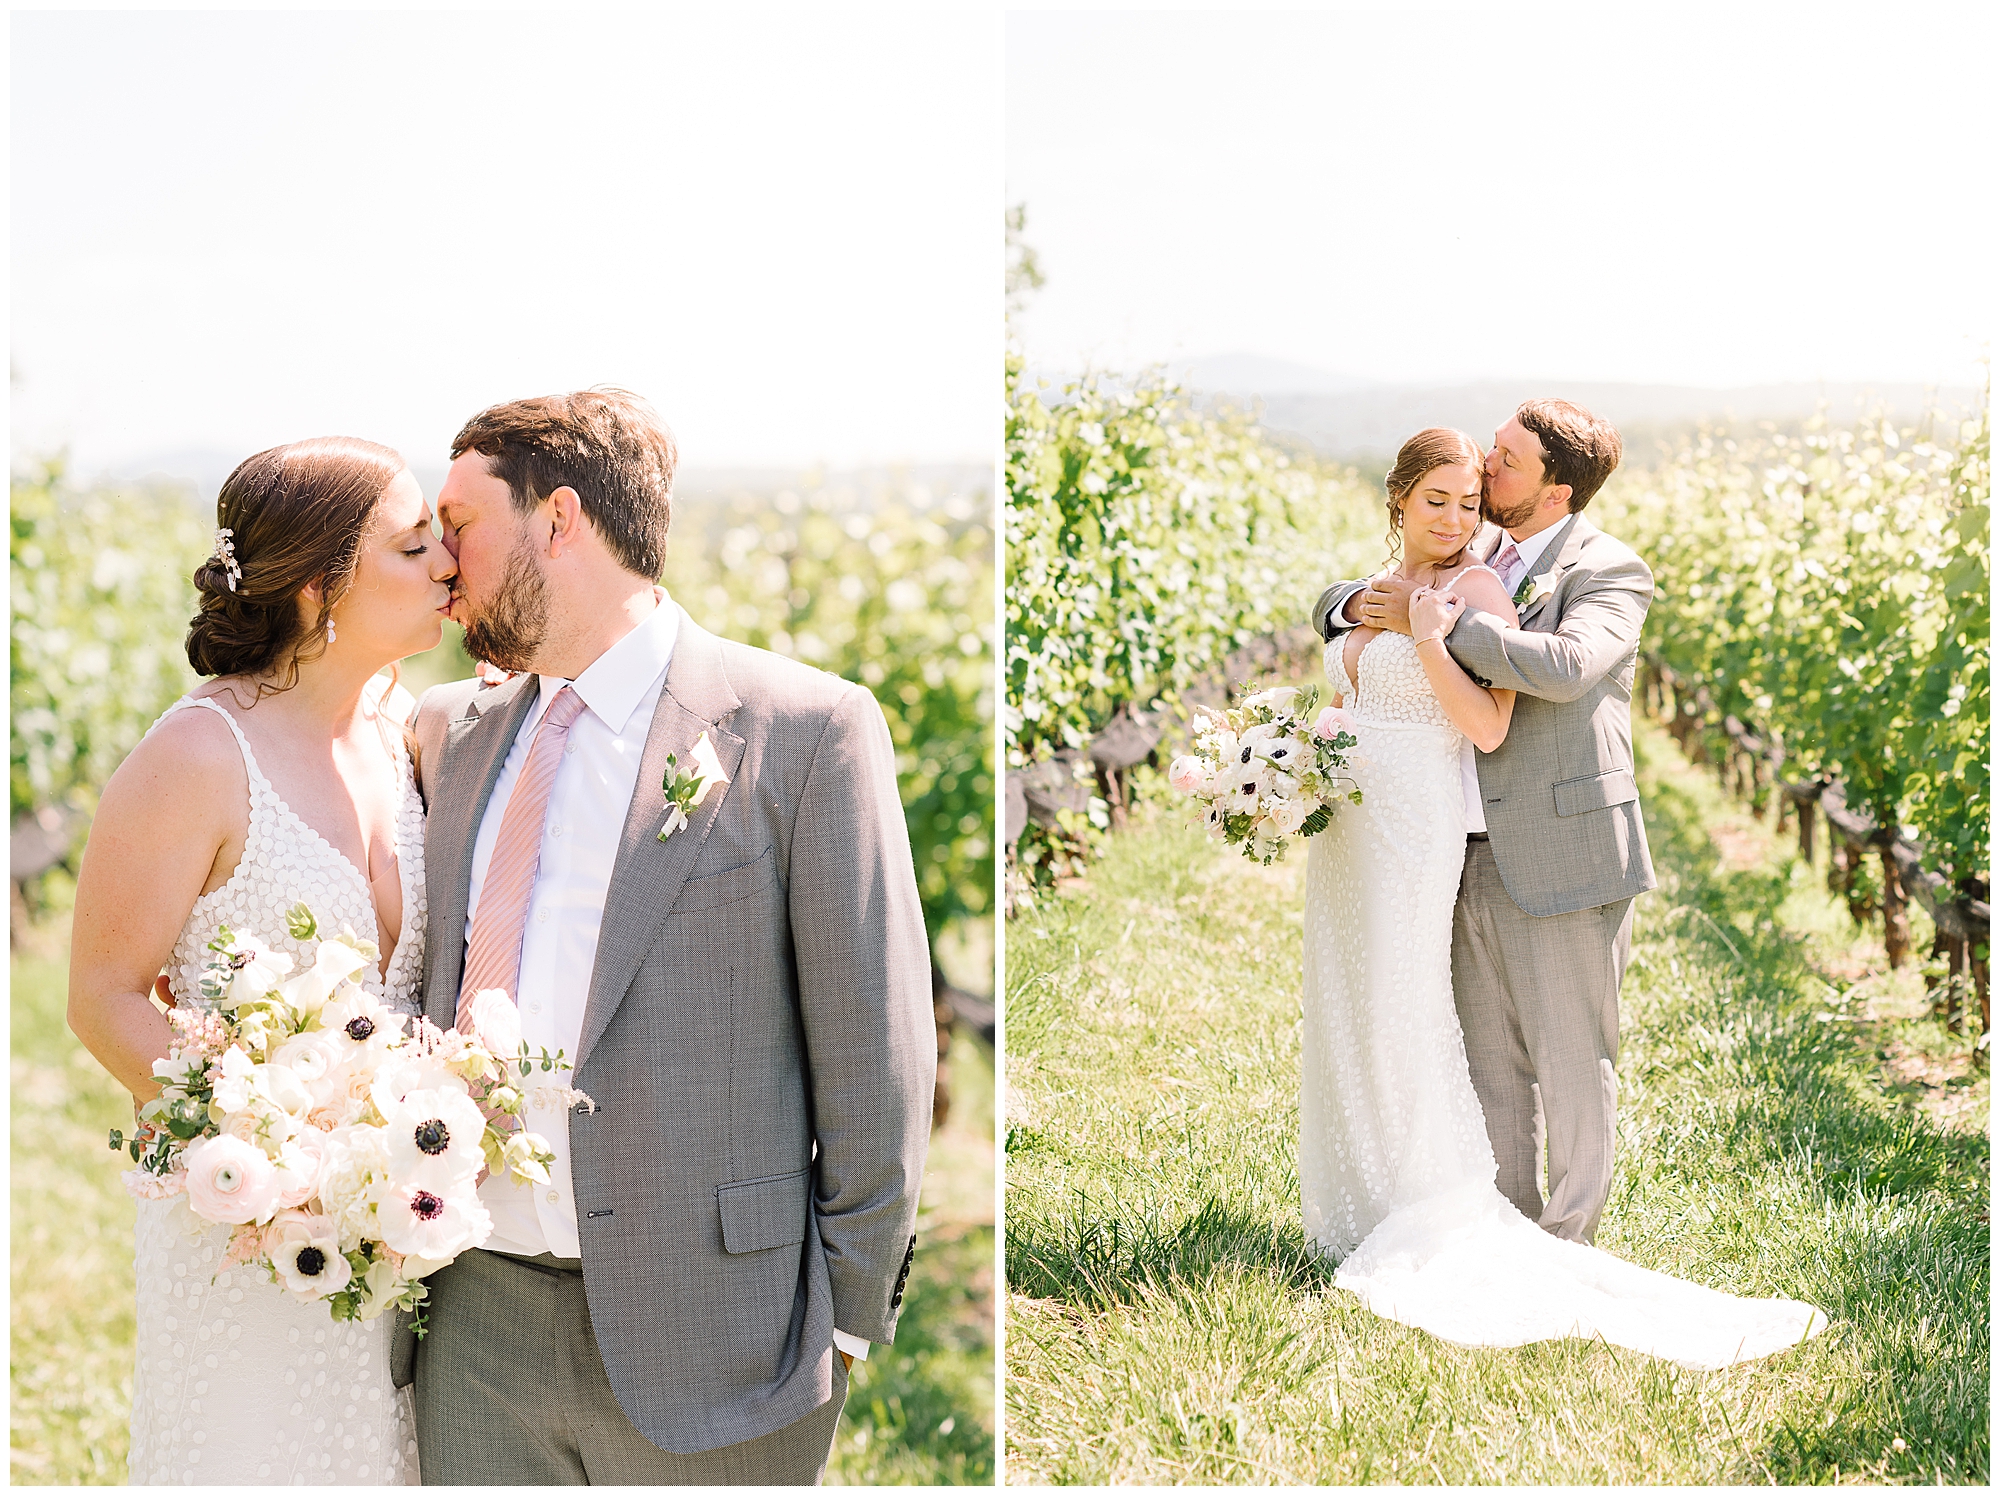 KrystaNormanPhoto_Summer_Stone_Tower_Winery Wedding_Leesburg_Virginia_Photographer_Krysta_Norman_0040.jpg